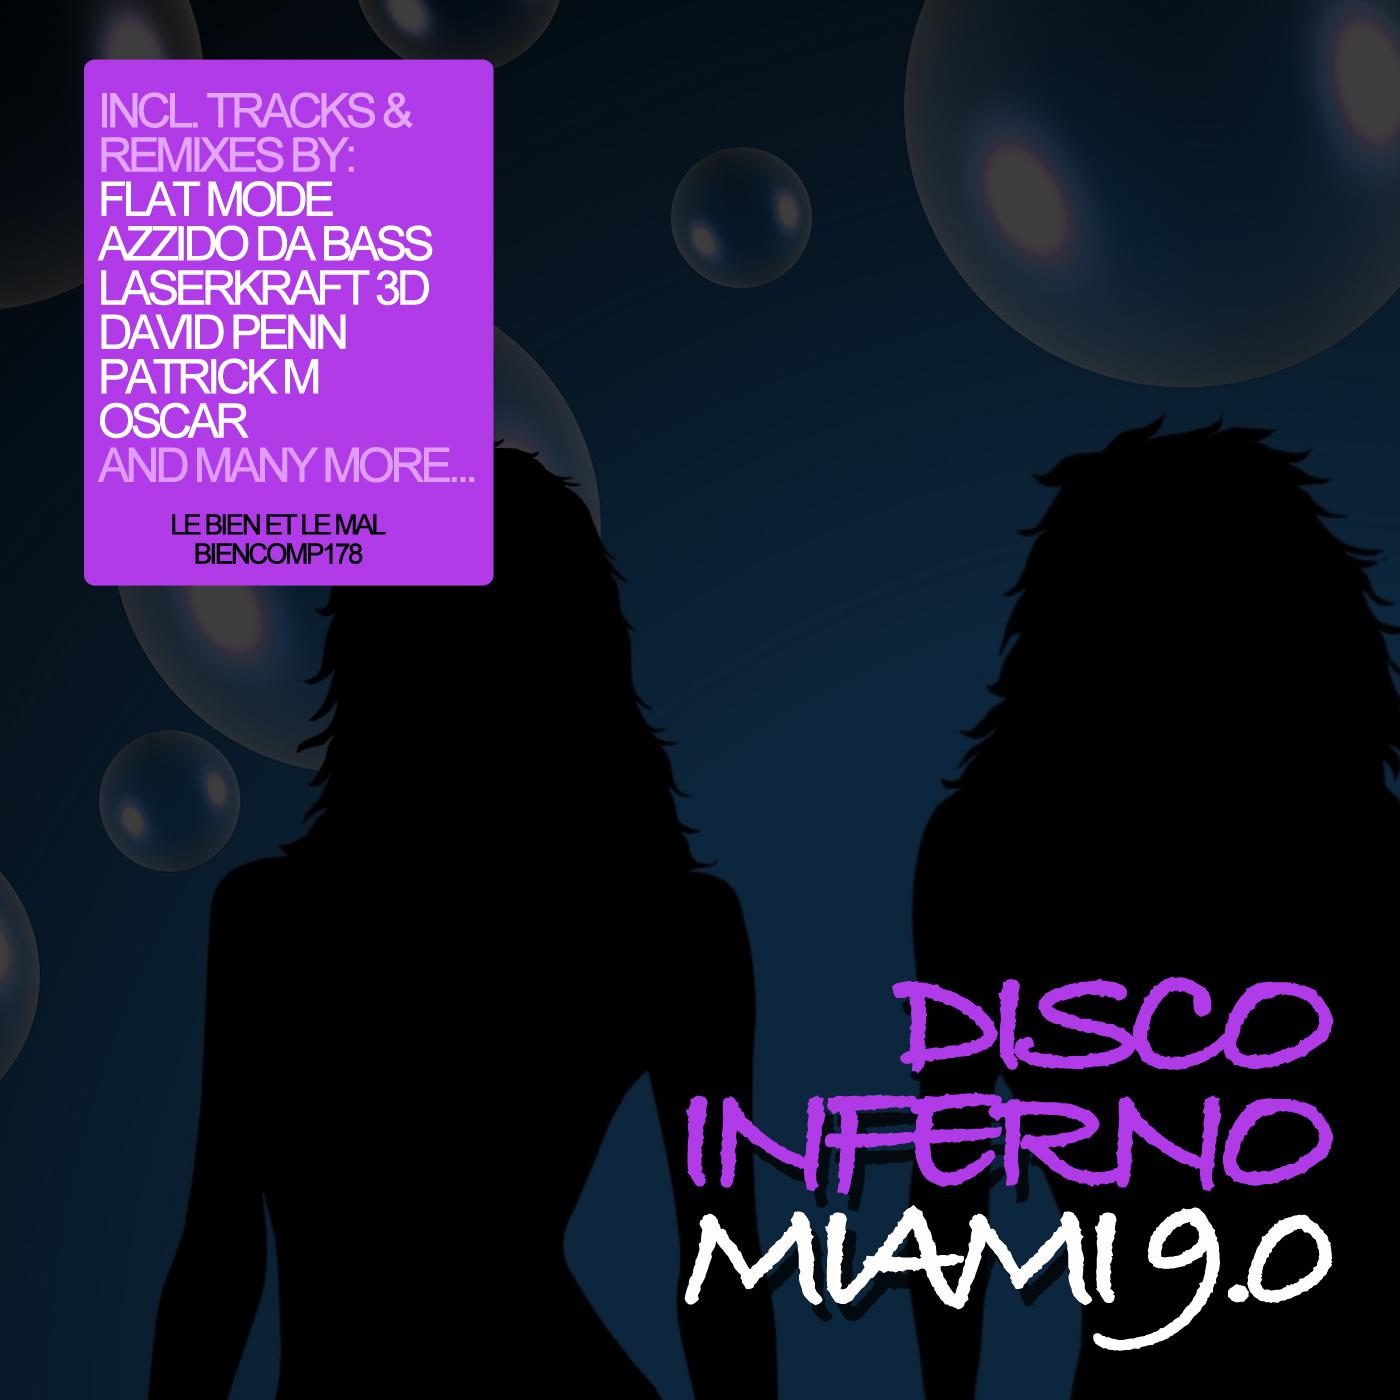 Disco Inferno Miami 9.0